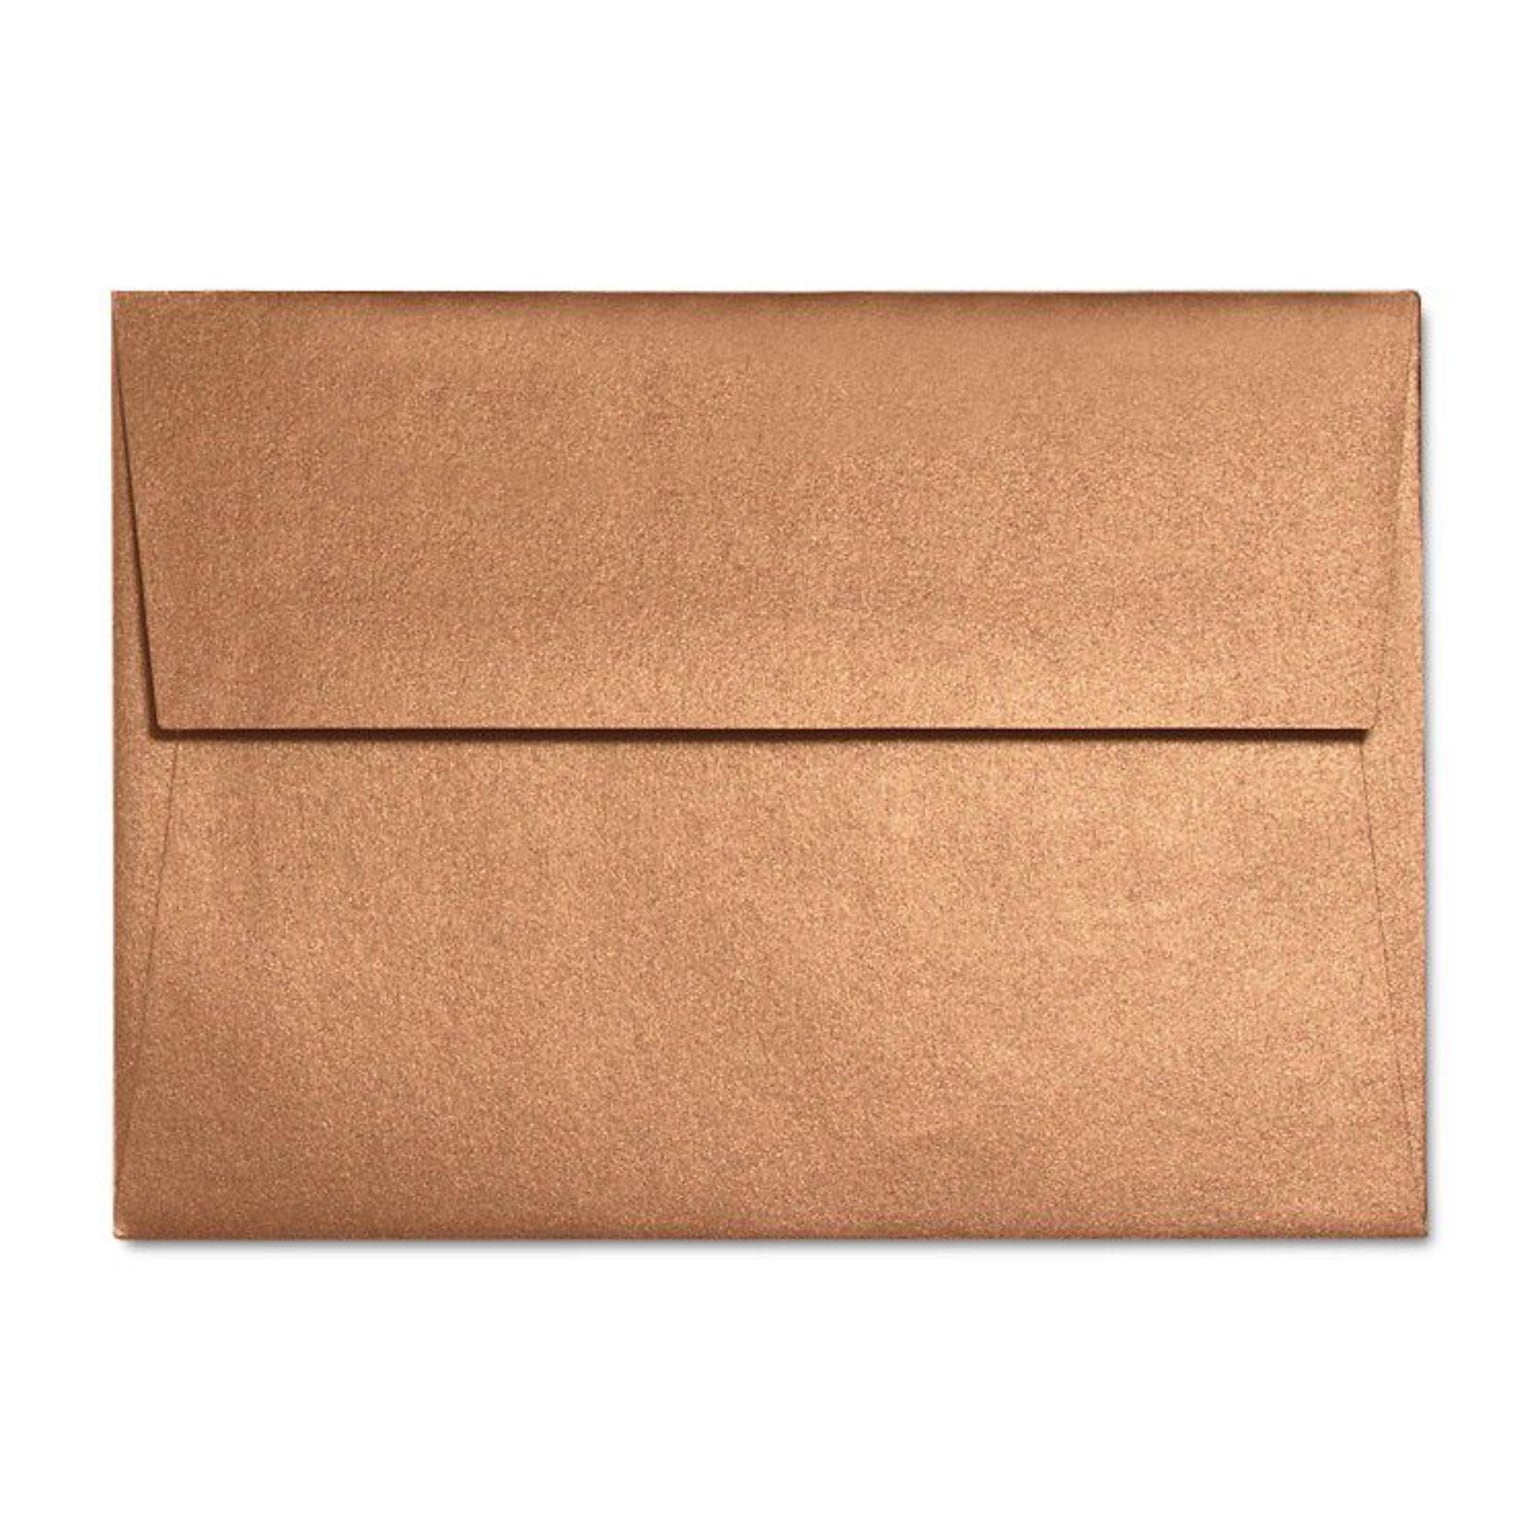 LUX A6 Invitation Envelopes (4 3/4 x 6 1/2) 250/Box, Copper Metallic (5375-11-250)